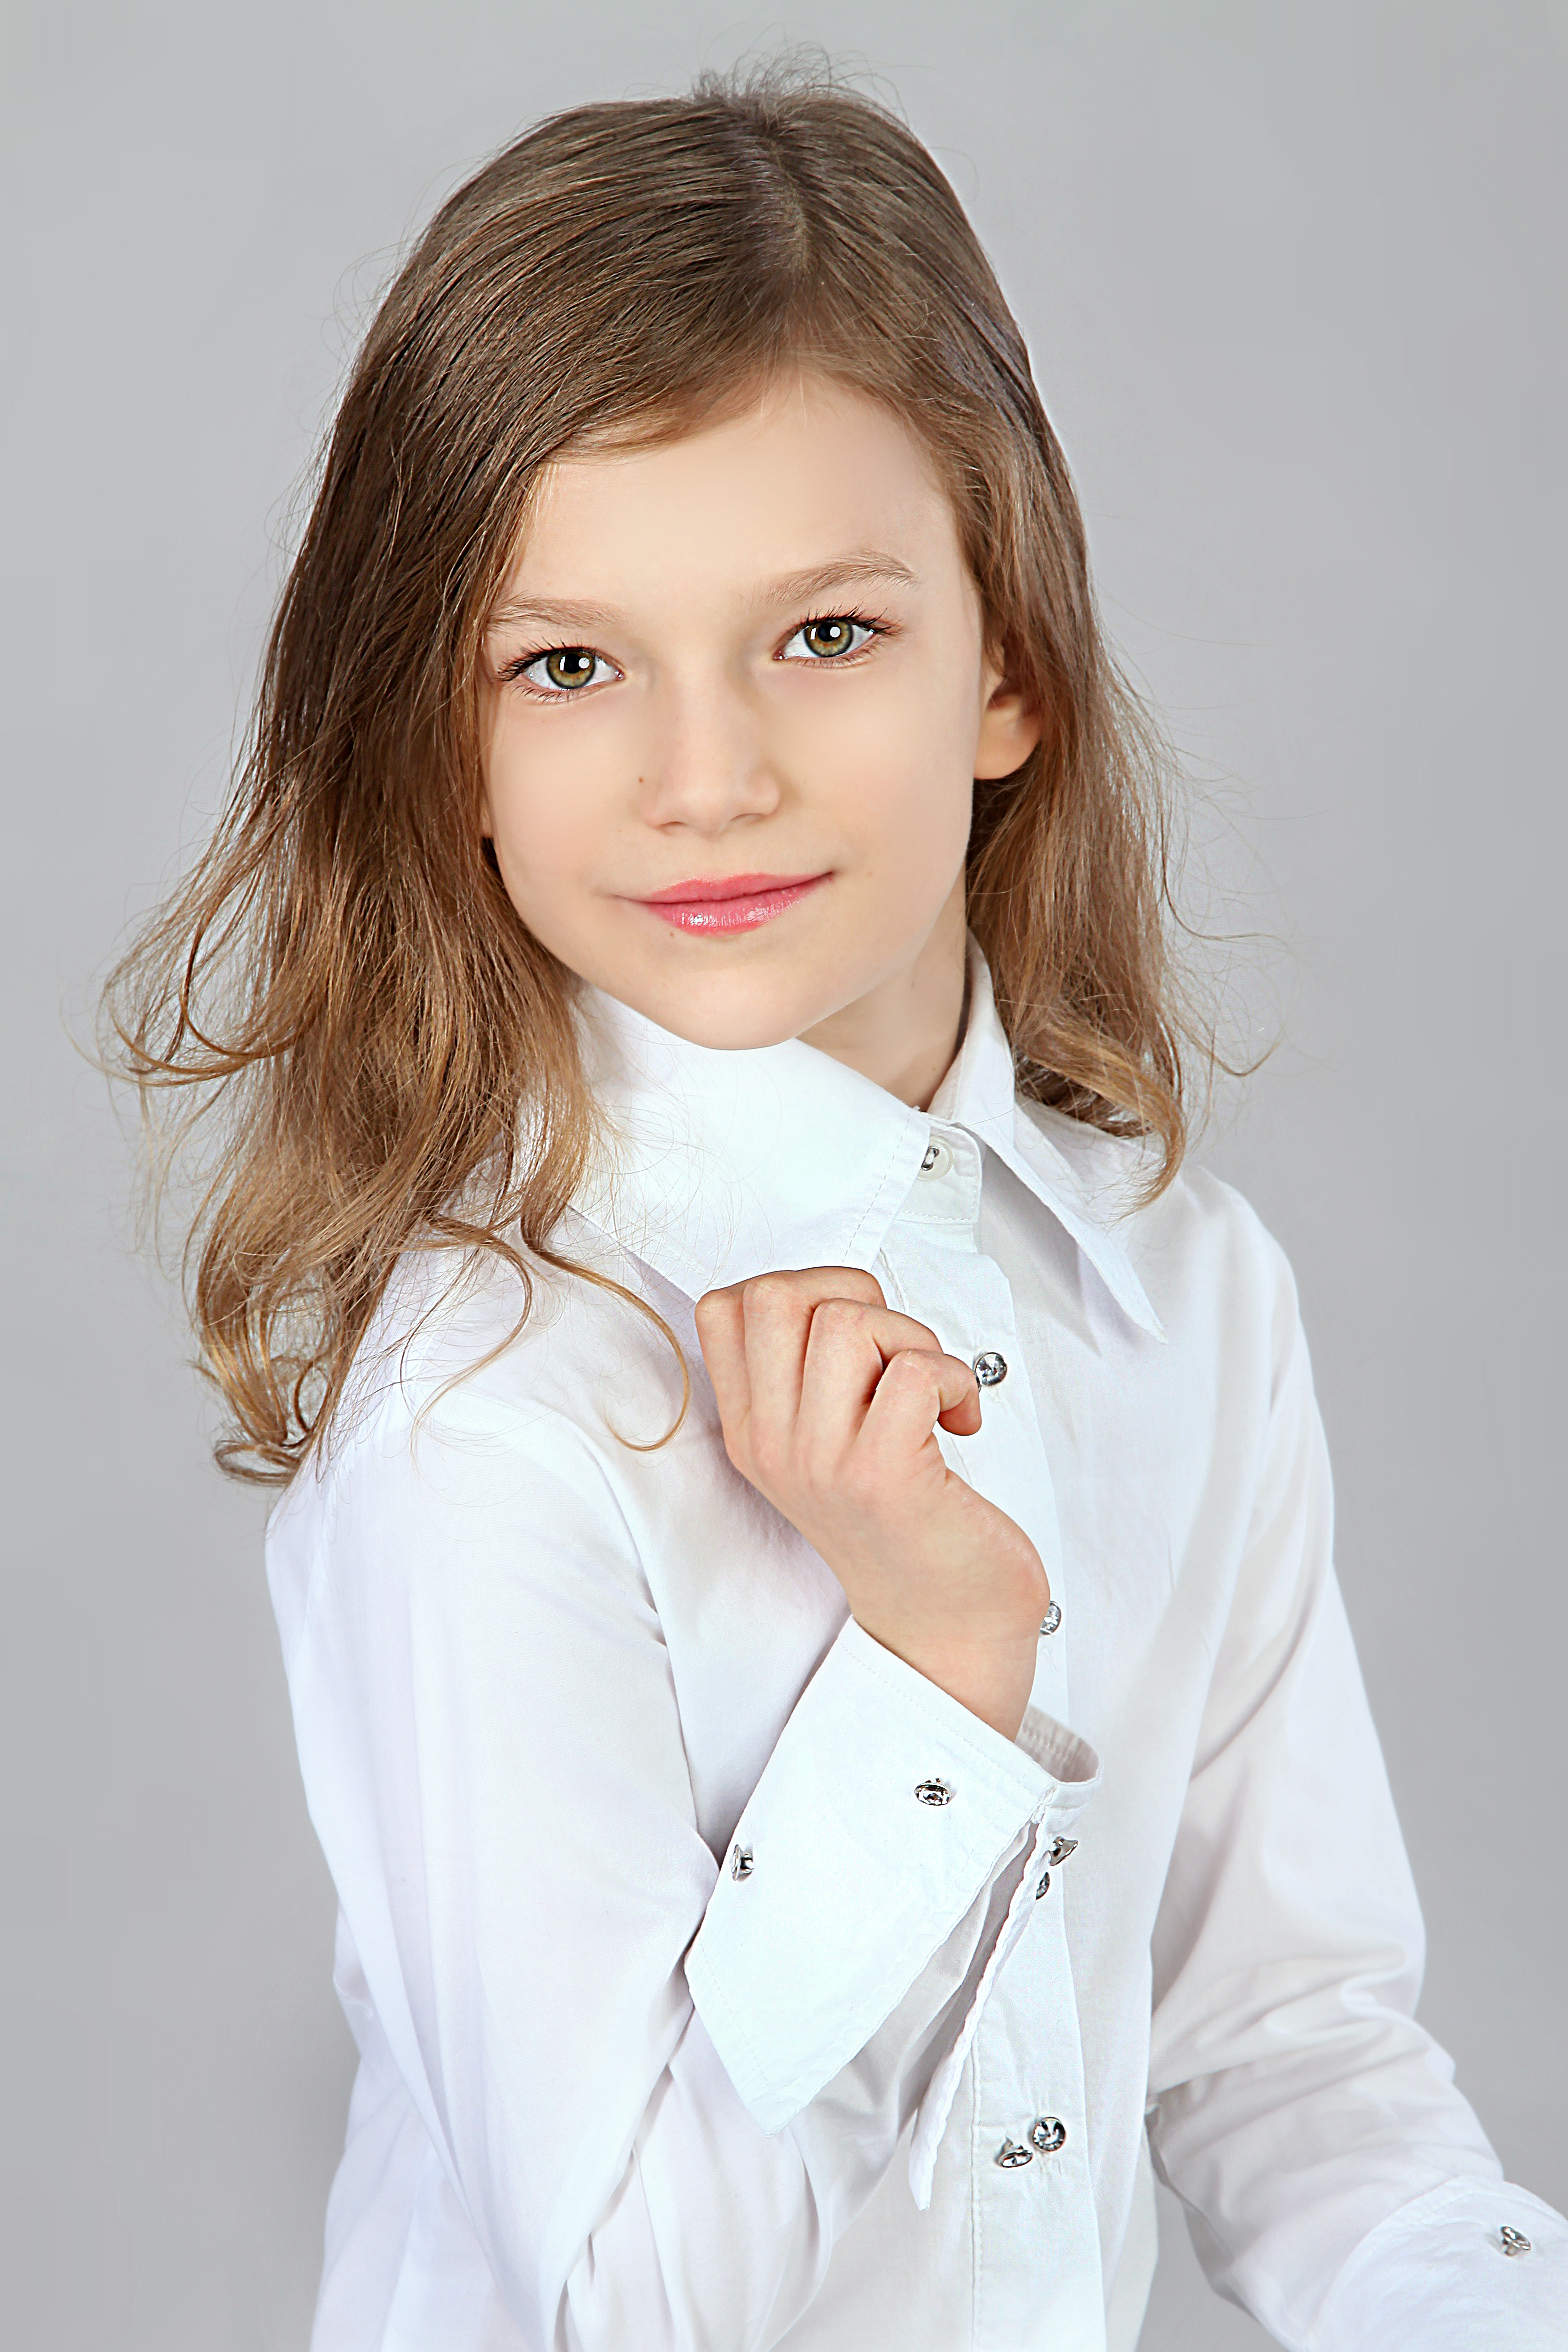 Вероника Хорошавина - аккредитованная модель для участия в подиумных показах на Междунродной Детской Неделе моды